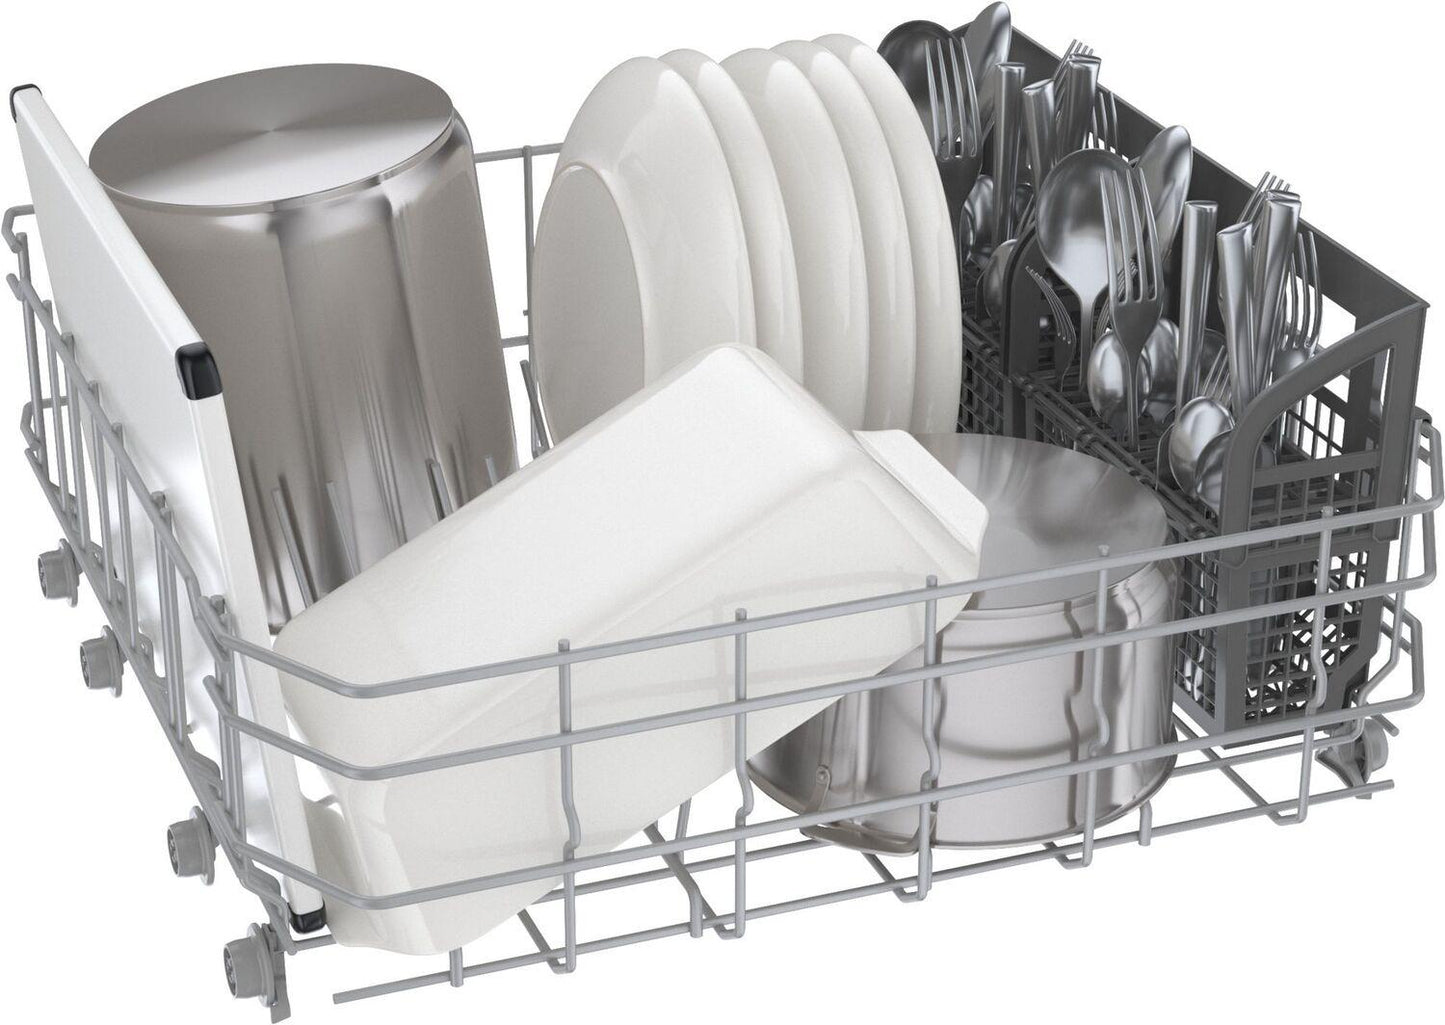 Bosch SHE4AEM2N 100 Plus Dishwasher 24" White